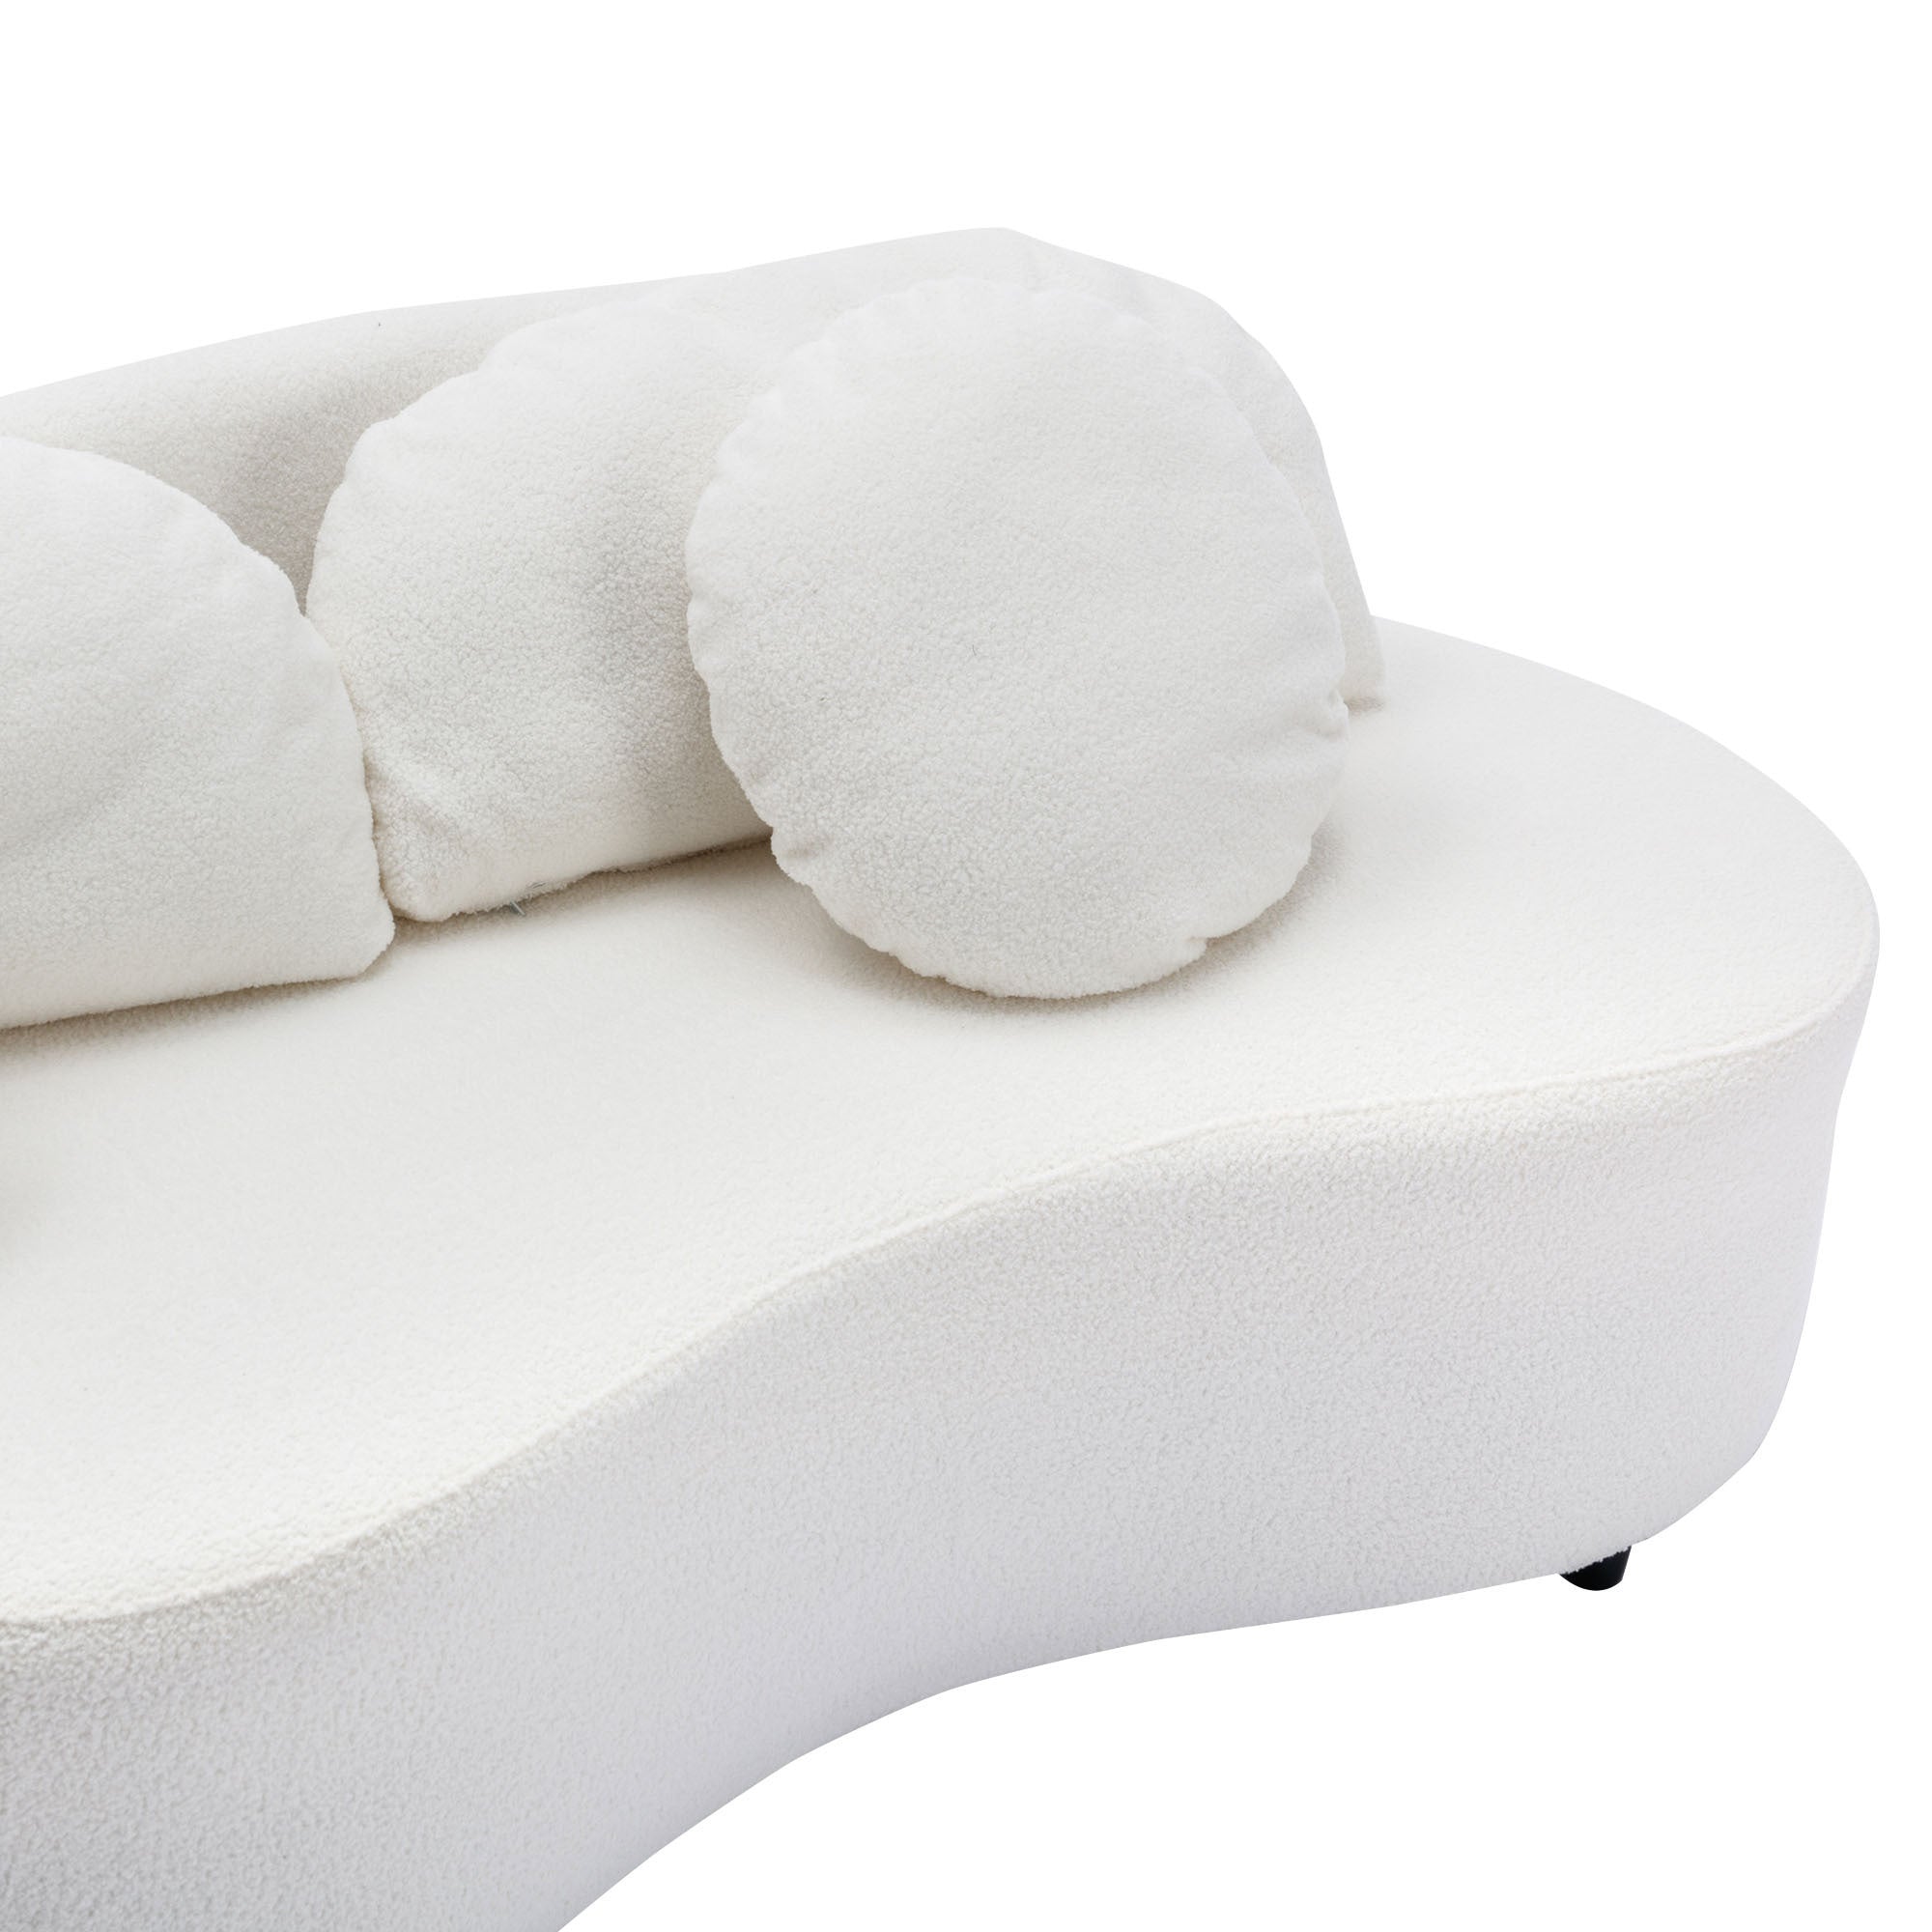 103.9" Modern Living Room Sofa Velvet Upholstered Couch Furniture - Beige